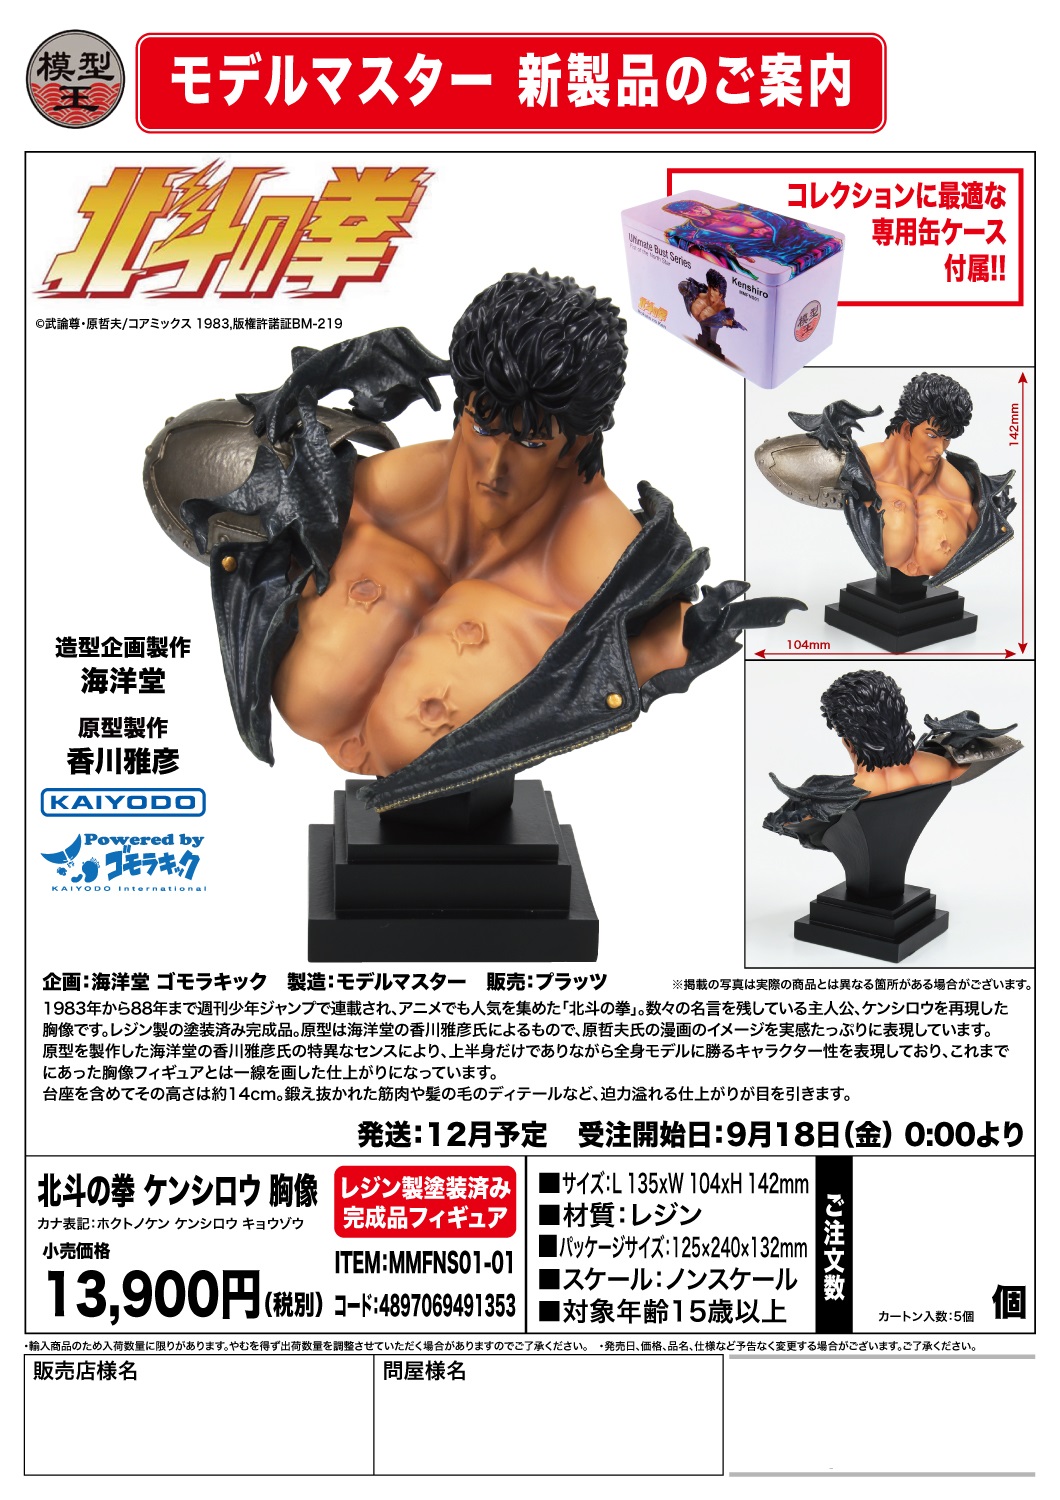 【A】树脂雕像 北斗神拳 健次郎 491353